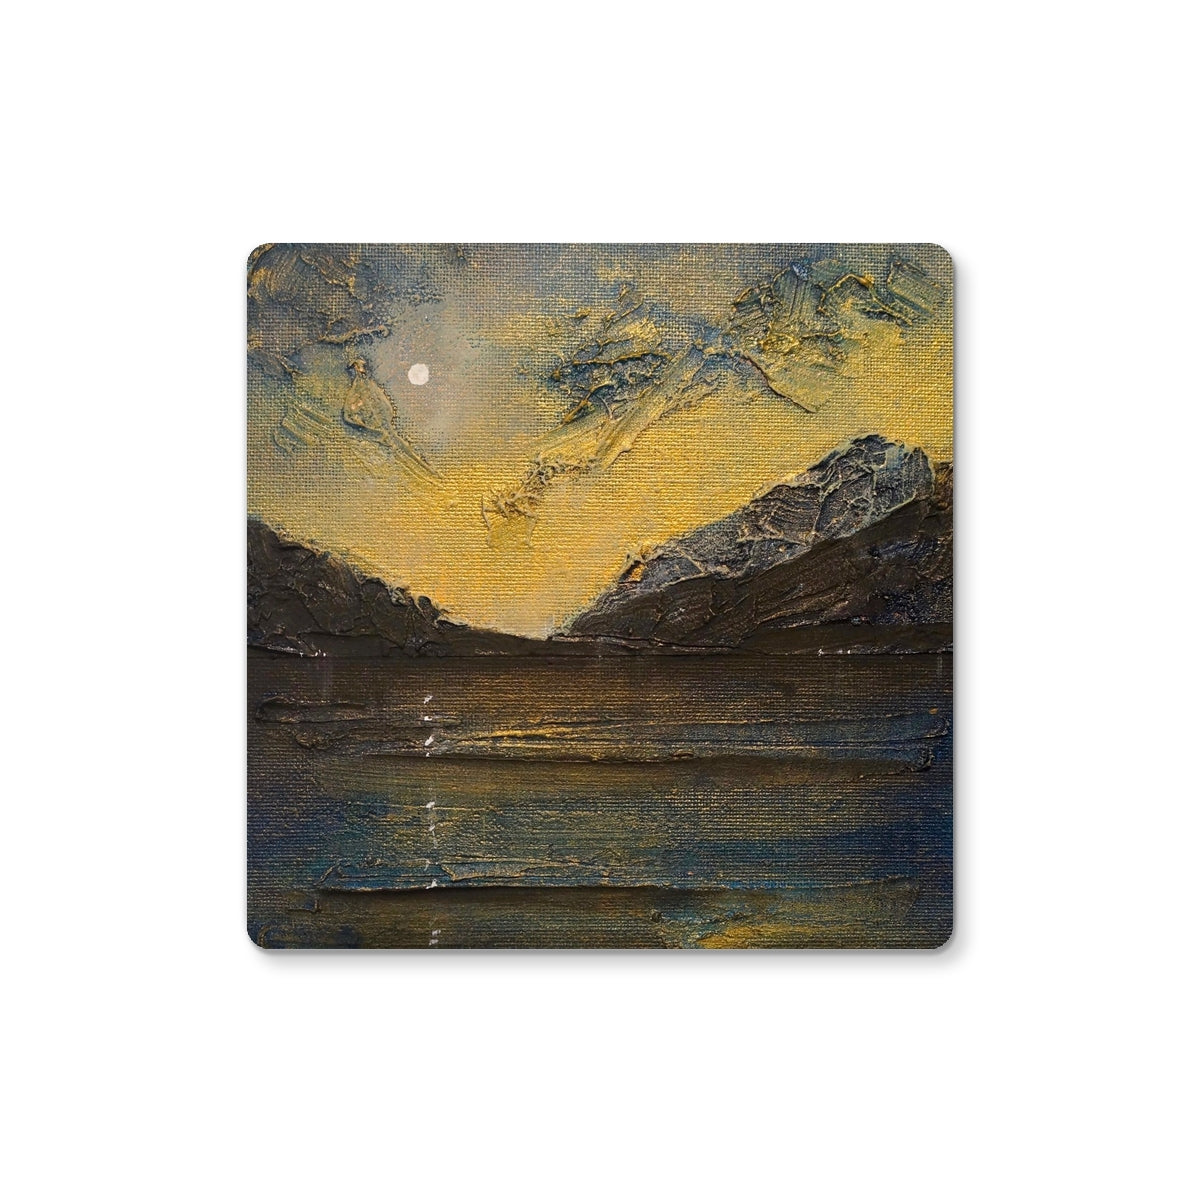 Loch Lomond Moonlight Art Gifts Coaster